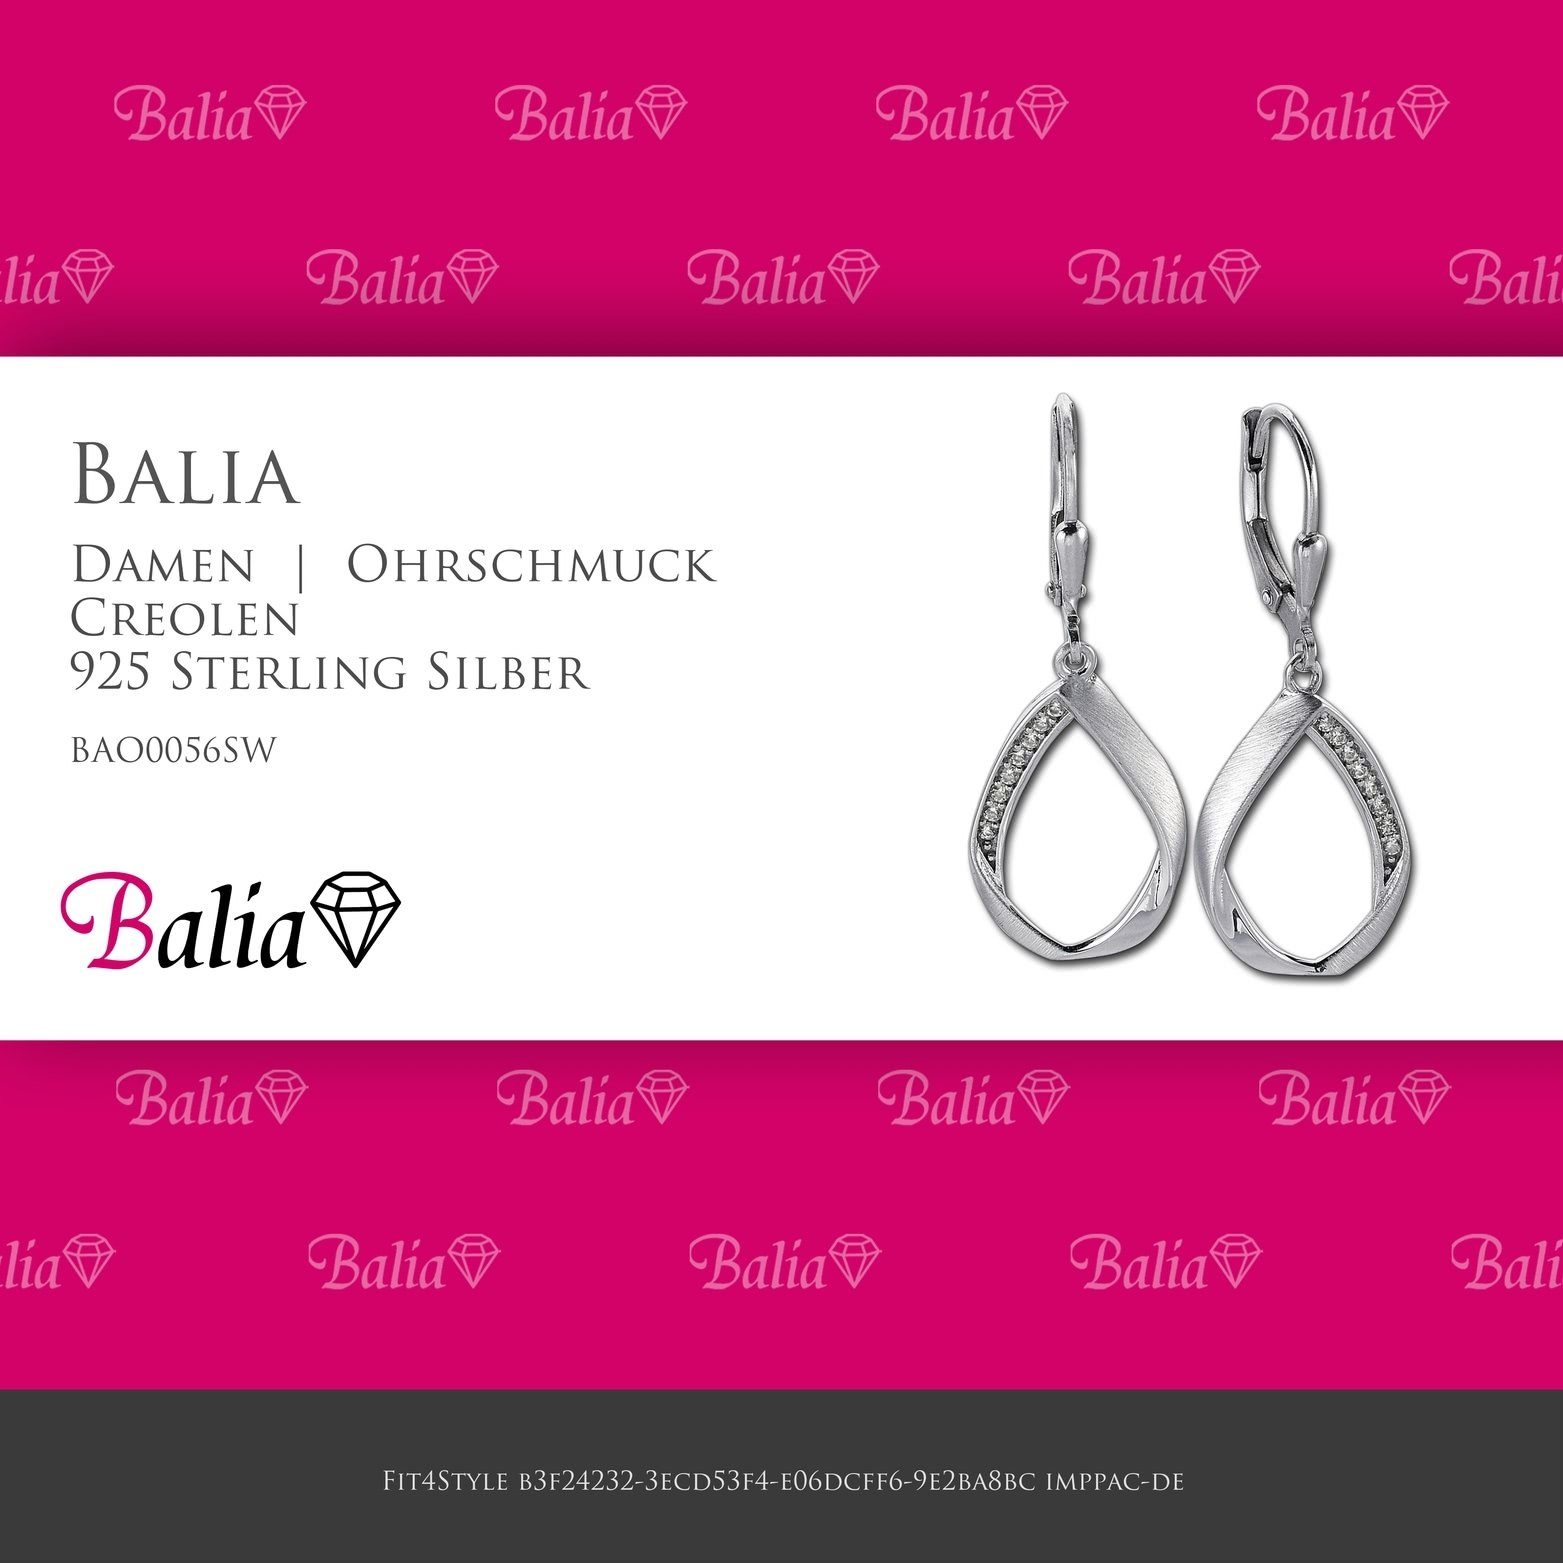 Balia Paar Ohrhänger Balia Damen 3,6cm poliert Länge Ohrringe matt aus und 925 Silber, Swing Ohrhänger Sterling (Ohrhänger), ca. Damen